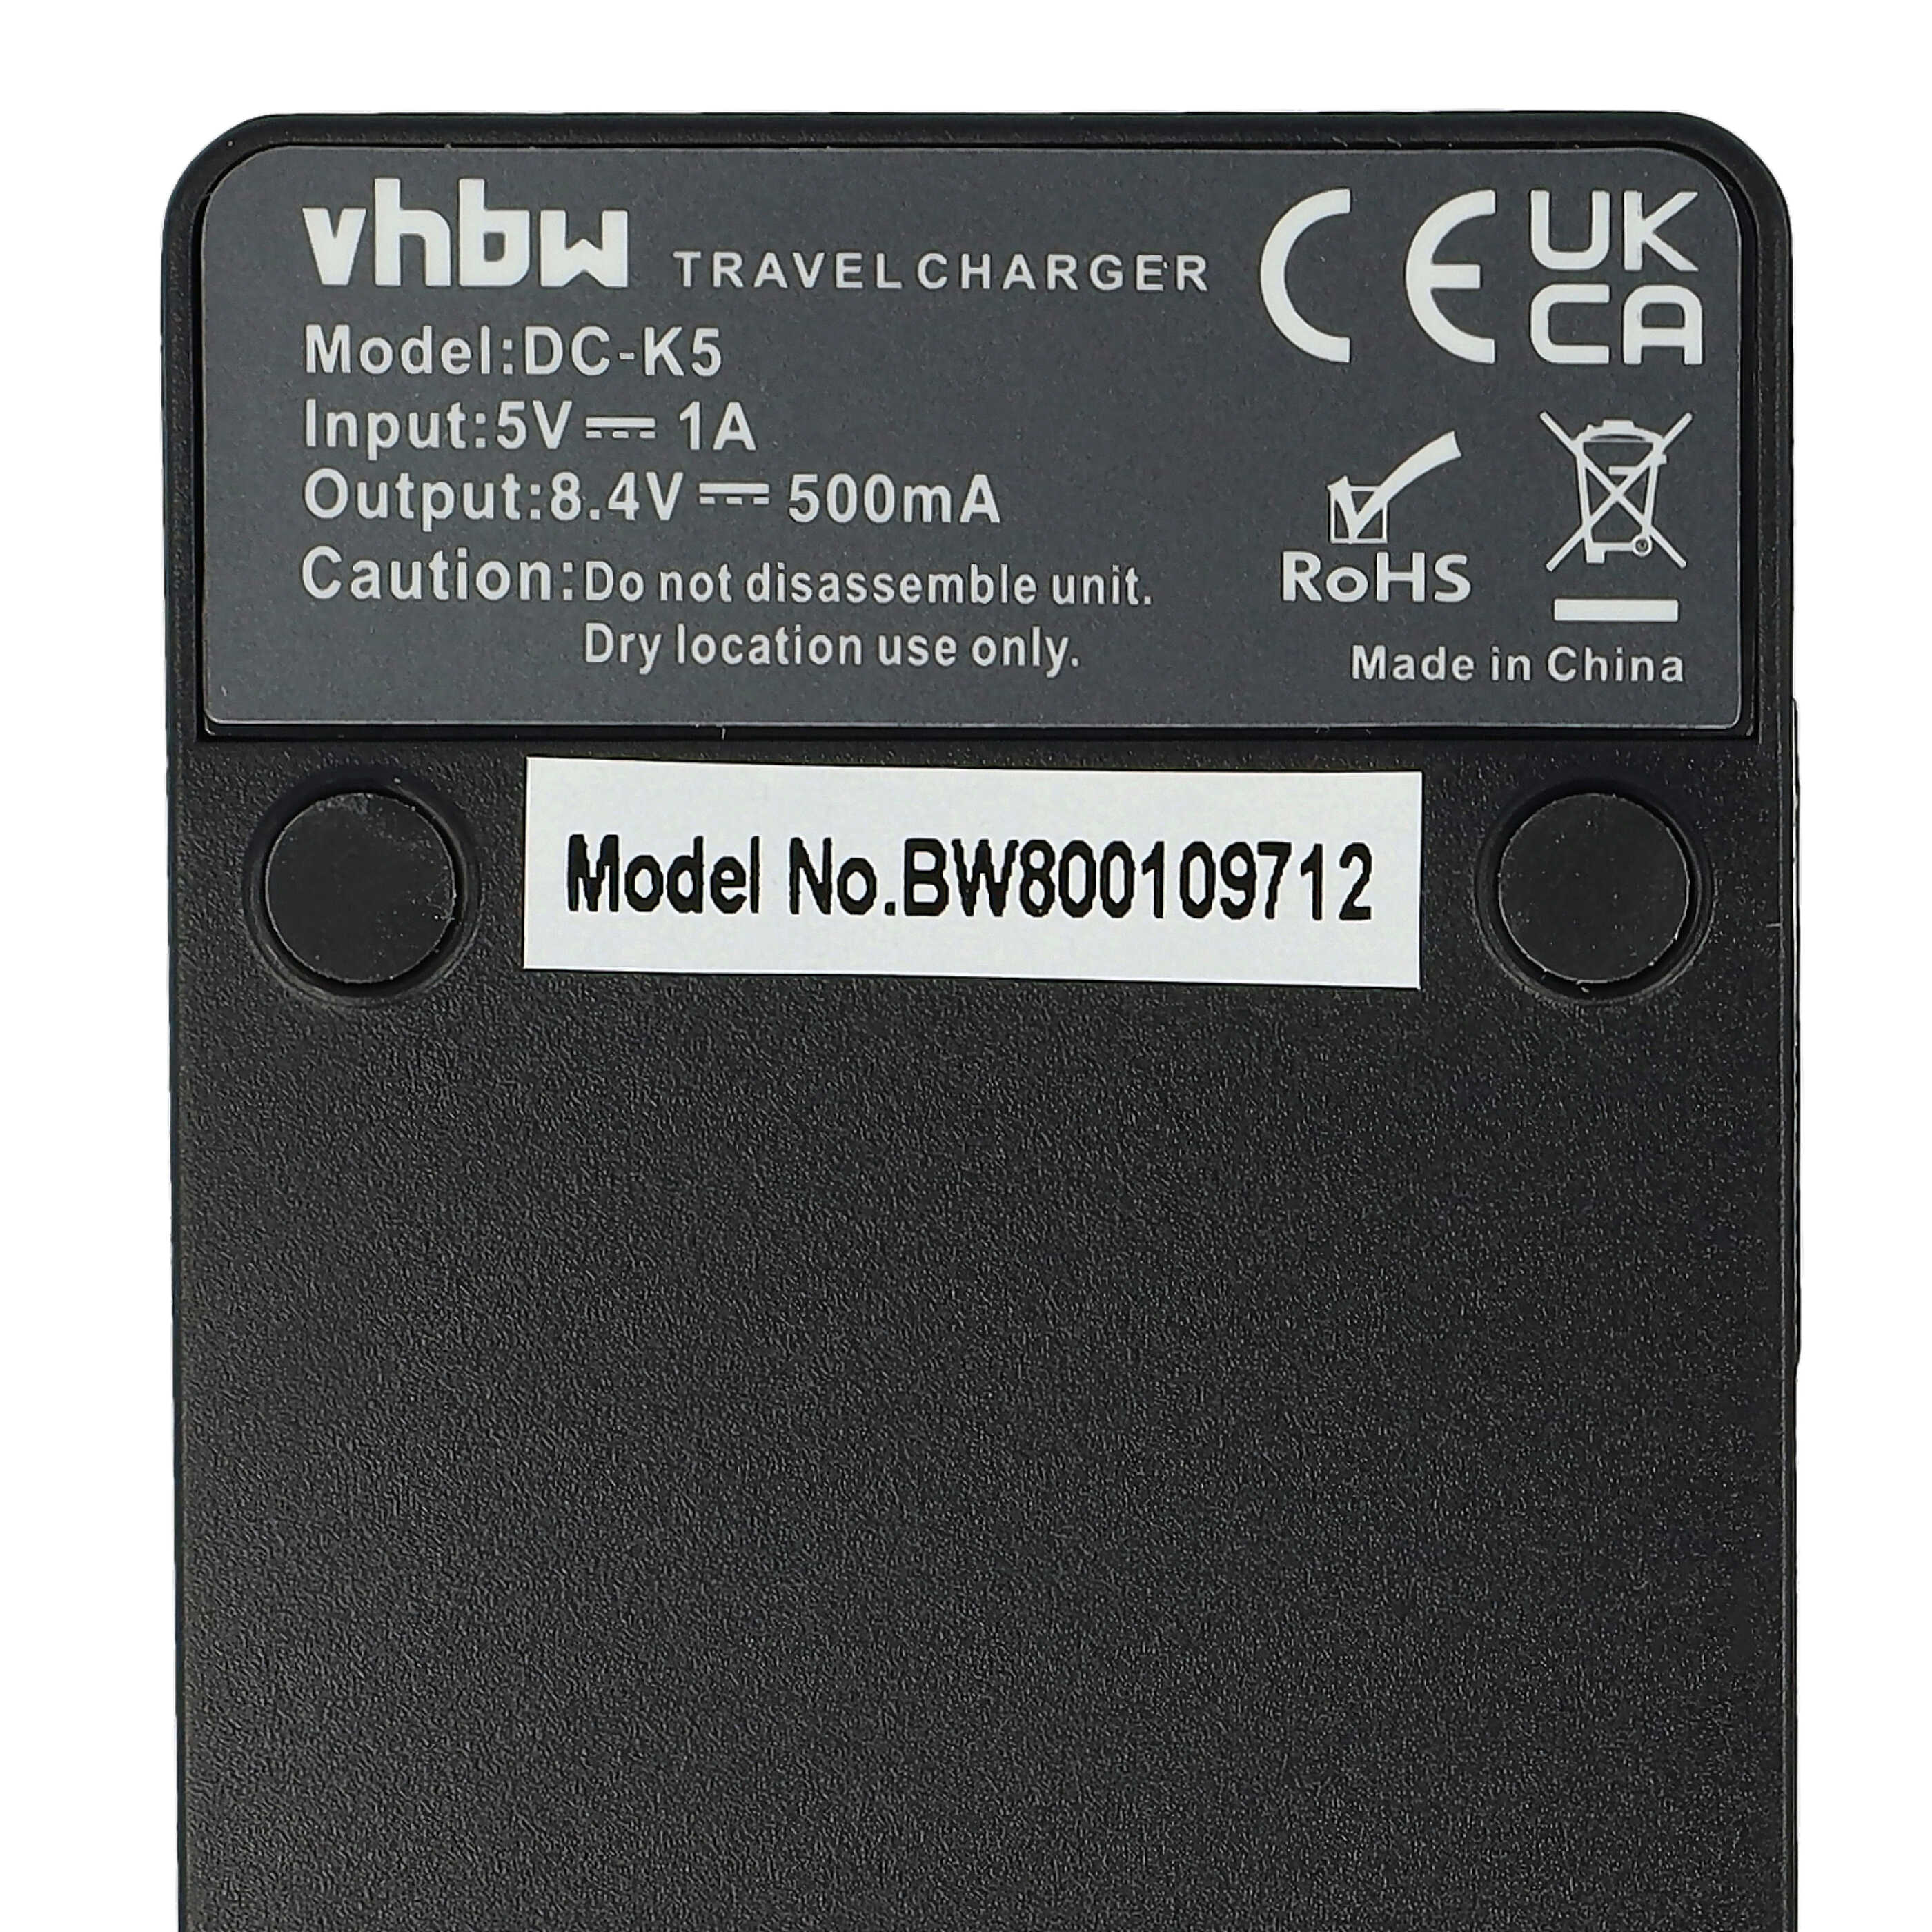 Chargeur pour appareil photo Panasonic VW-VBD1E 